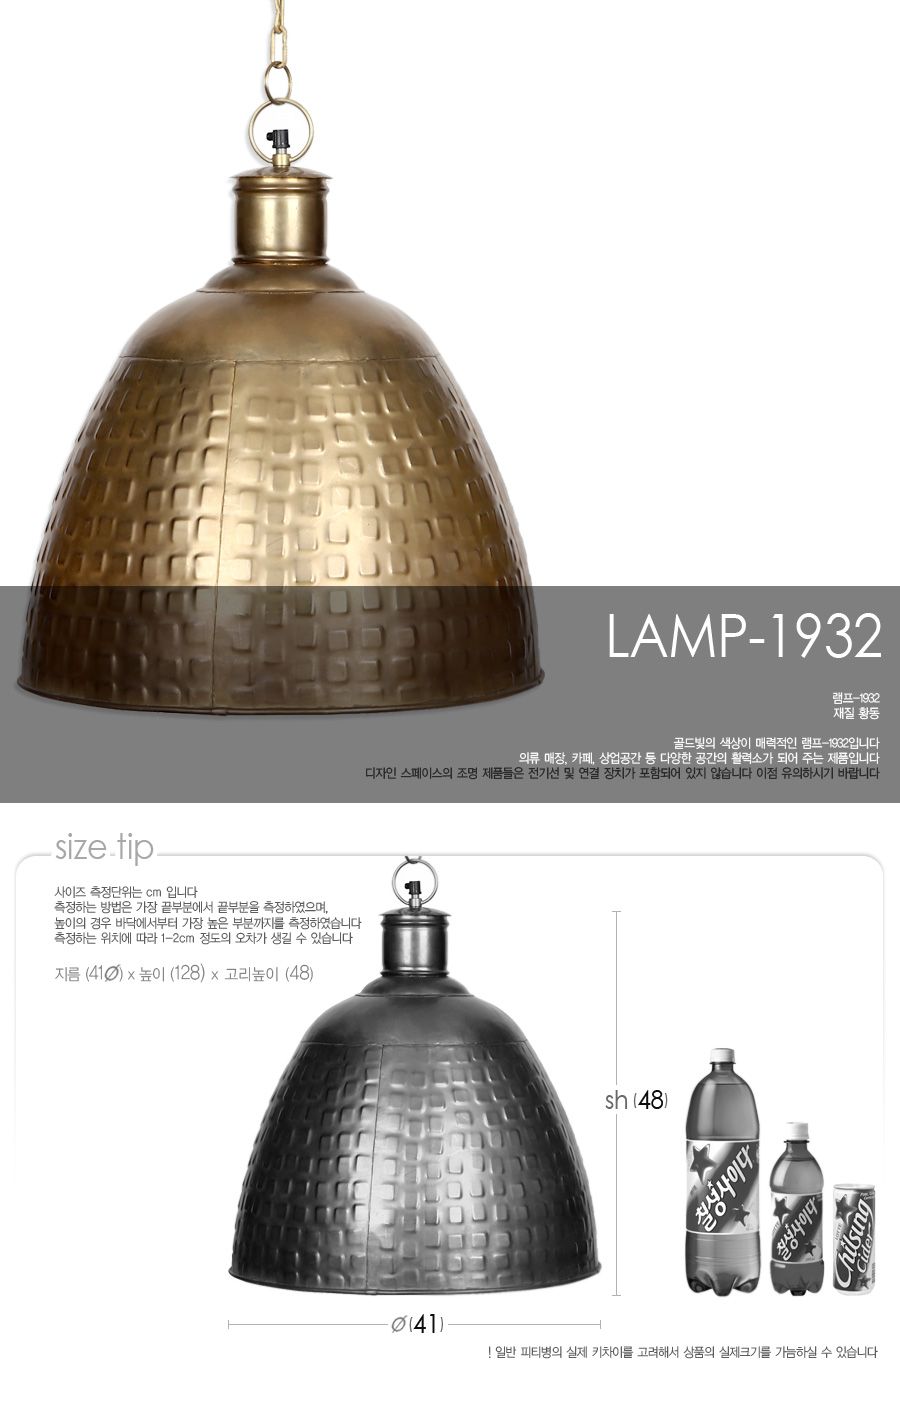 lamp-1932_01.jpg